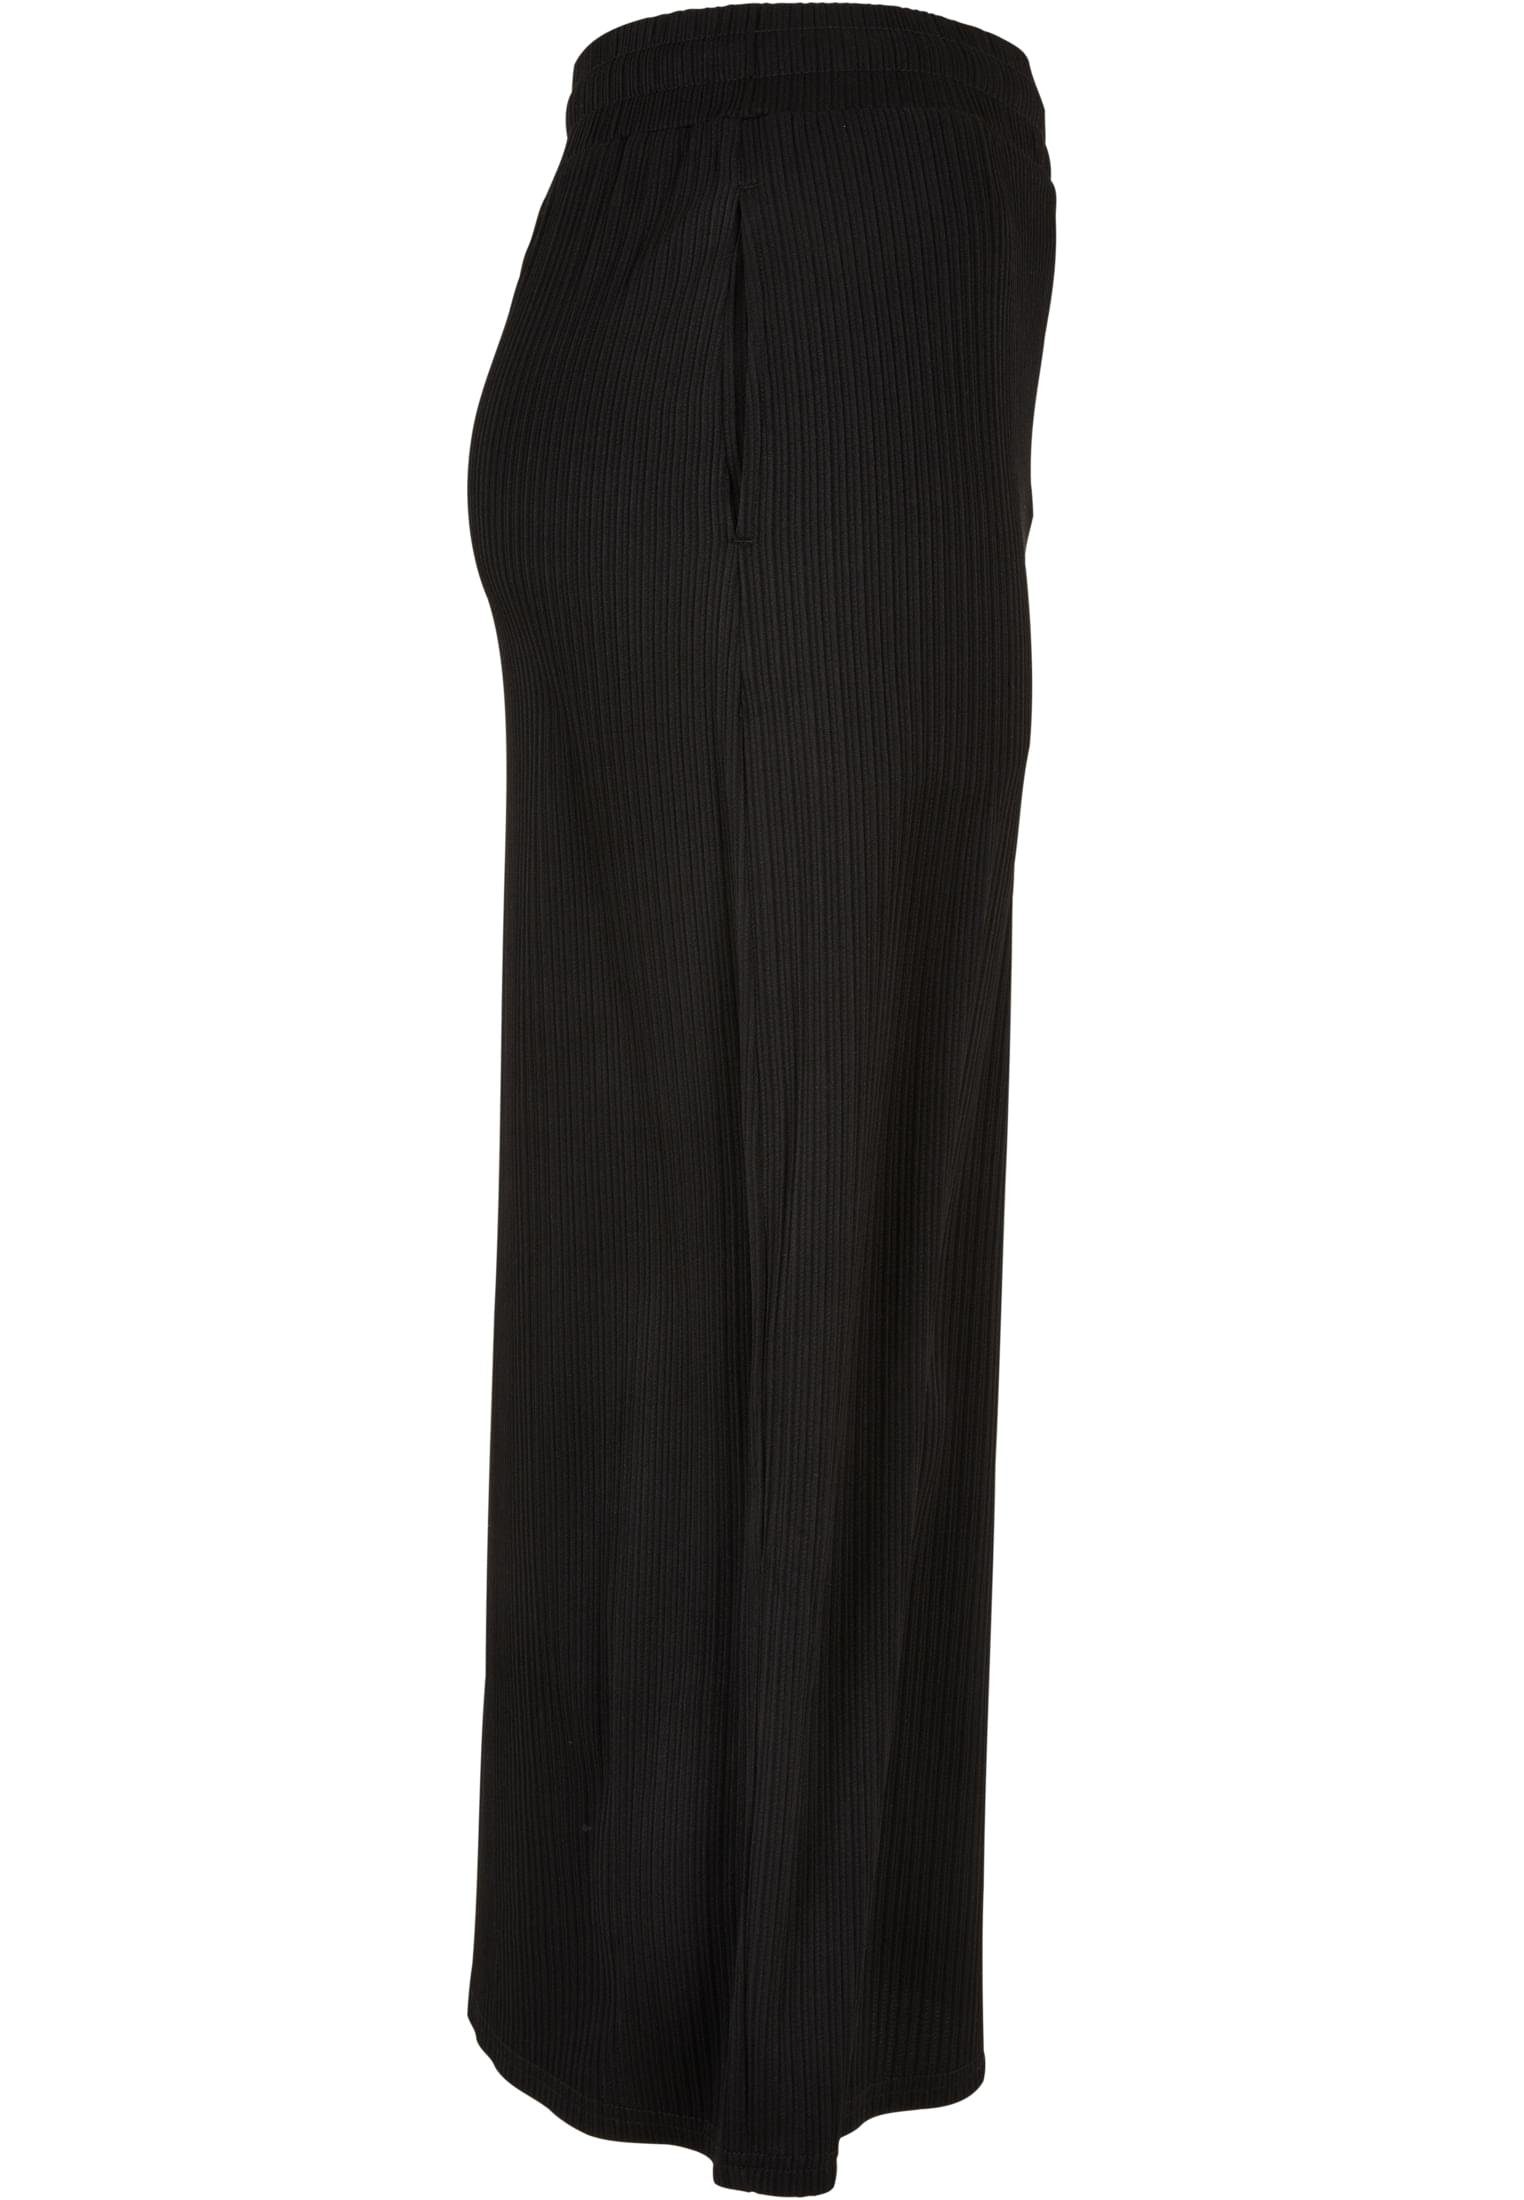 Jersey Damen Jerseyrock Skirt (1-tlg) Rib Ladies CLASSICS URBAN Midi